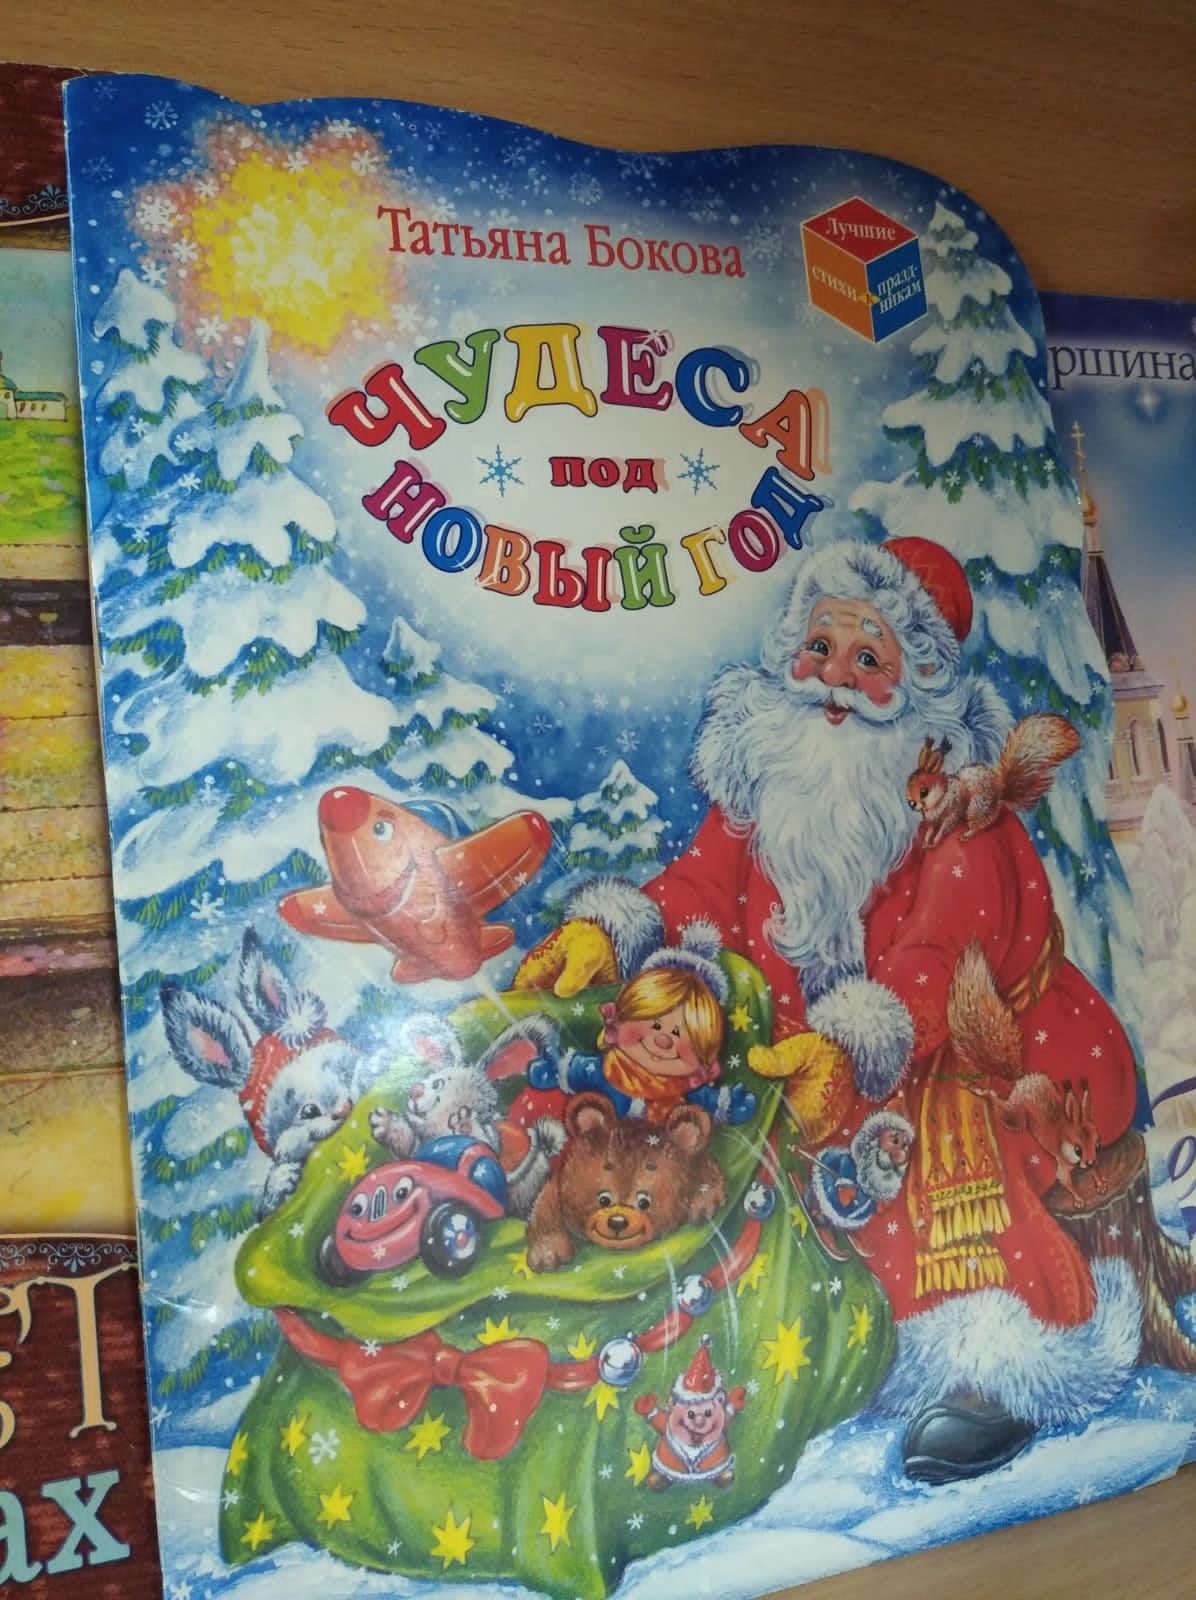 Рождественская выставка открылась в детской библиотеке Болгара